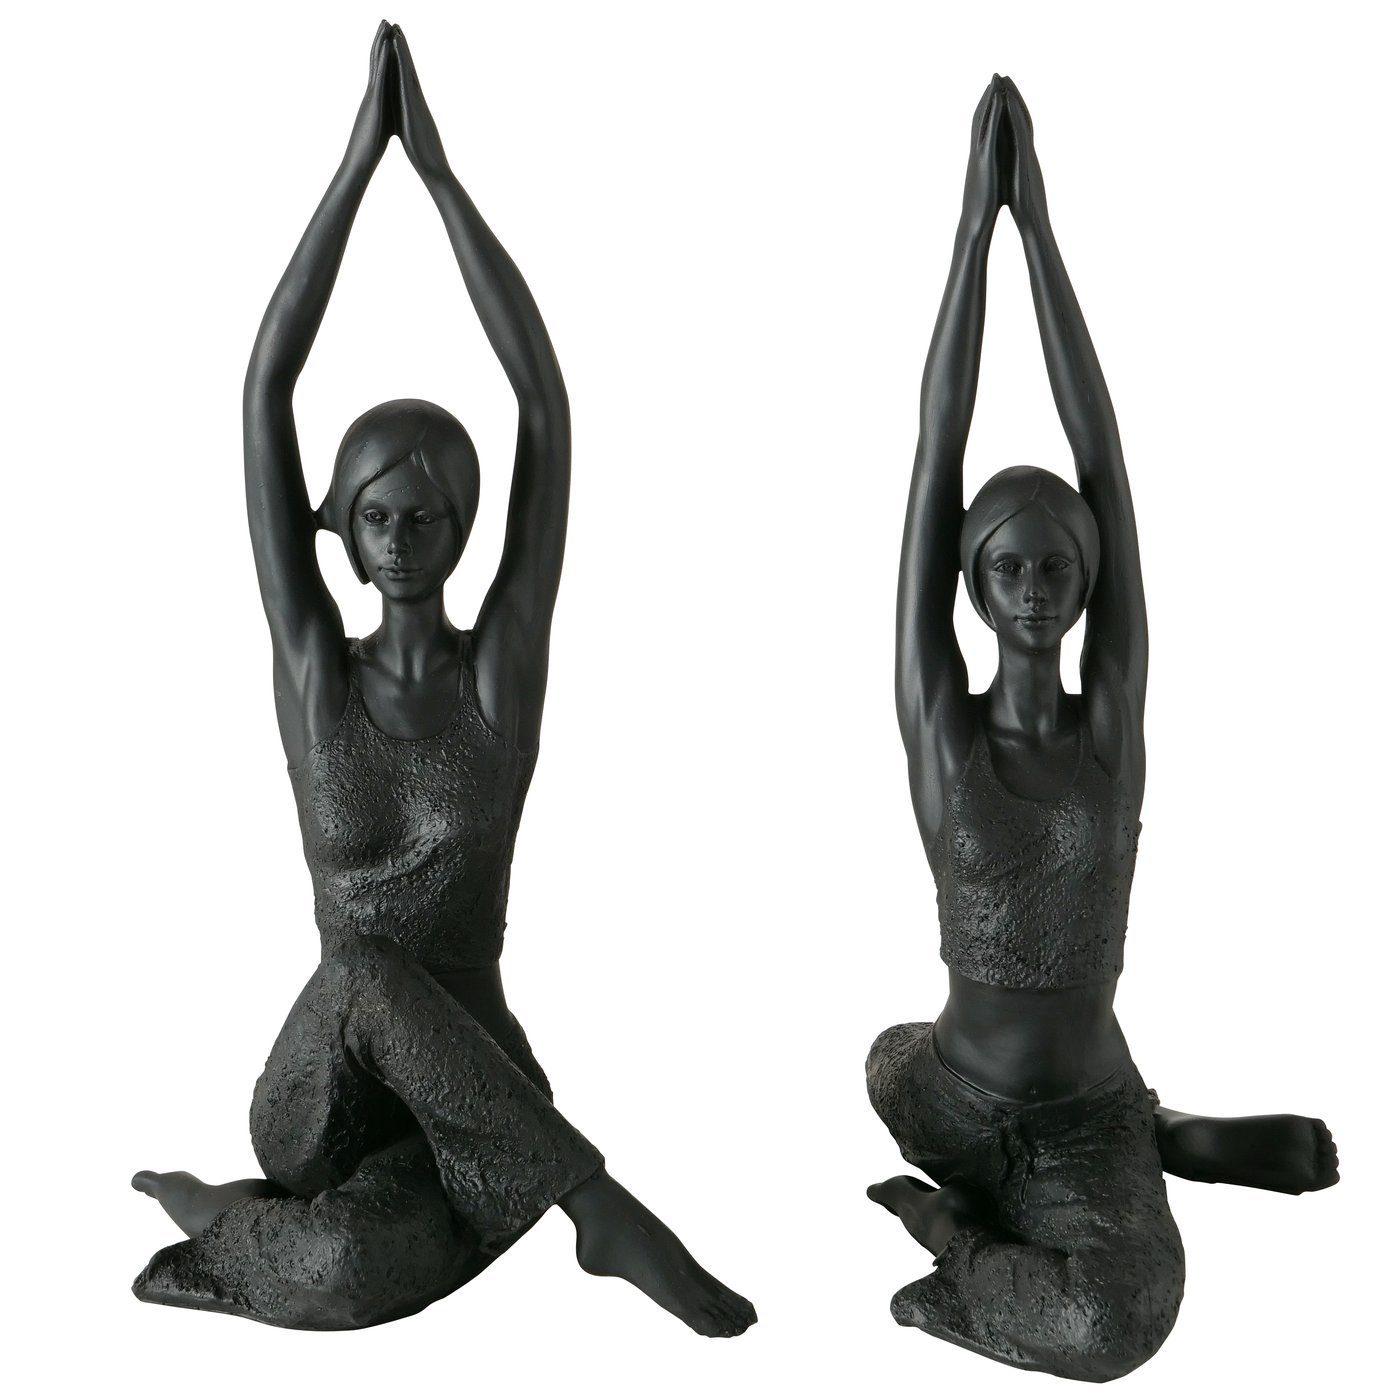 Auffüllen [sofortige Lieferung] MF Skulptur 2er Set Yoga 40cm Sitzposition, 'Asana' Yoga in Skulpturen 